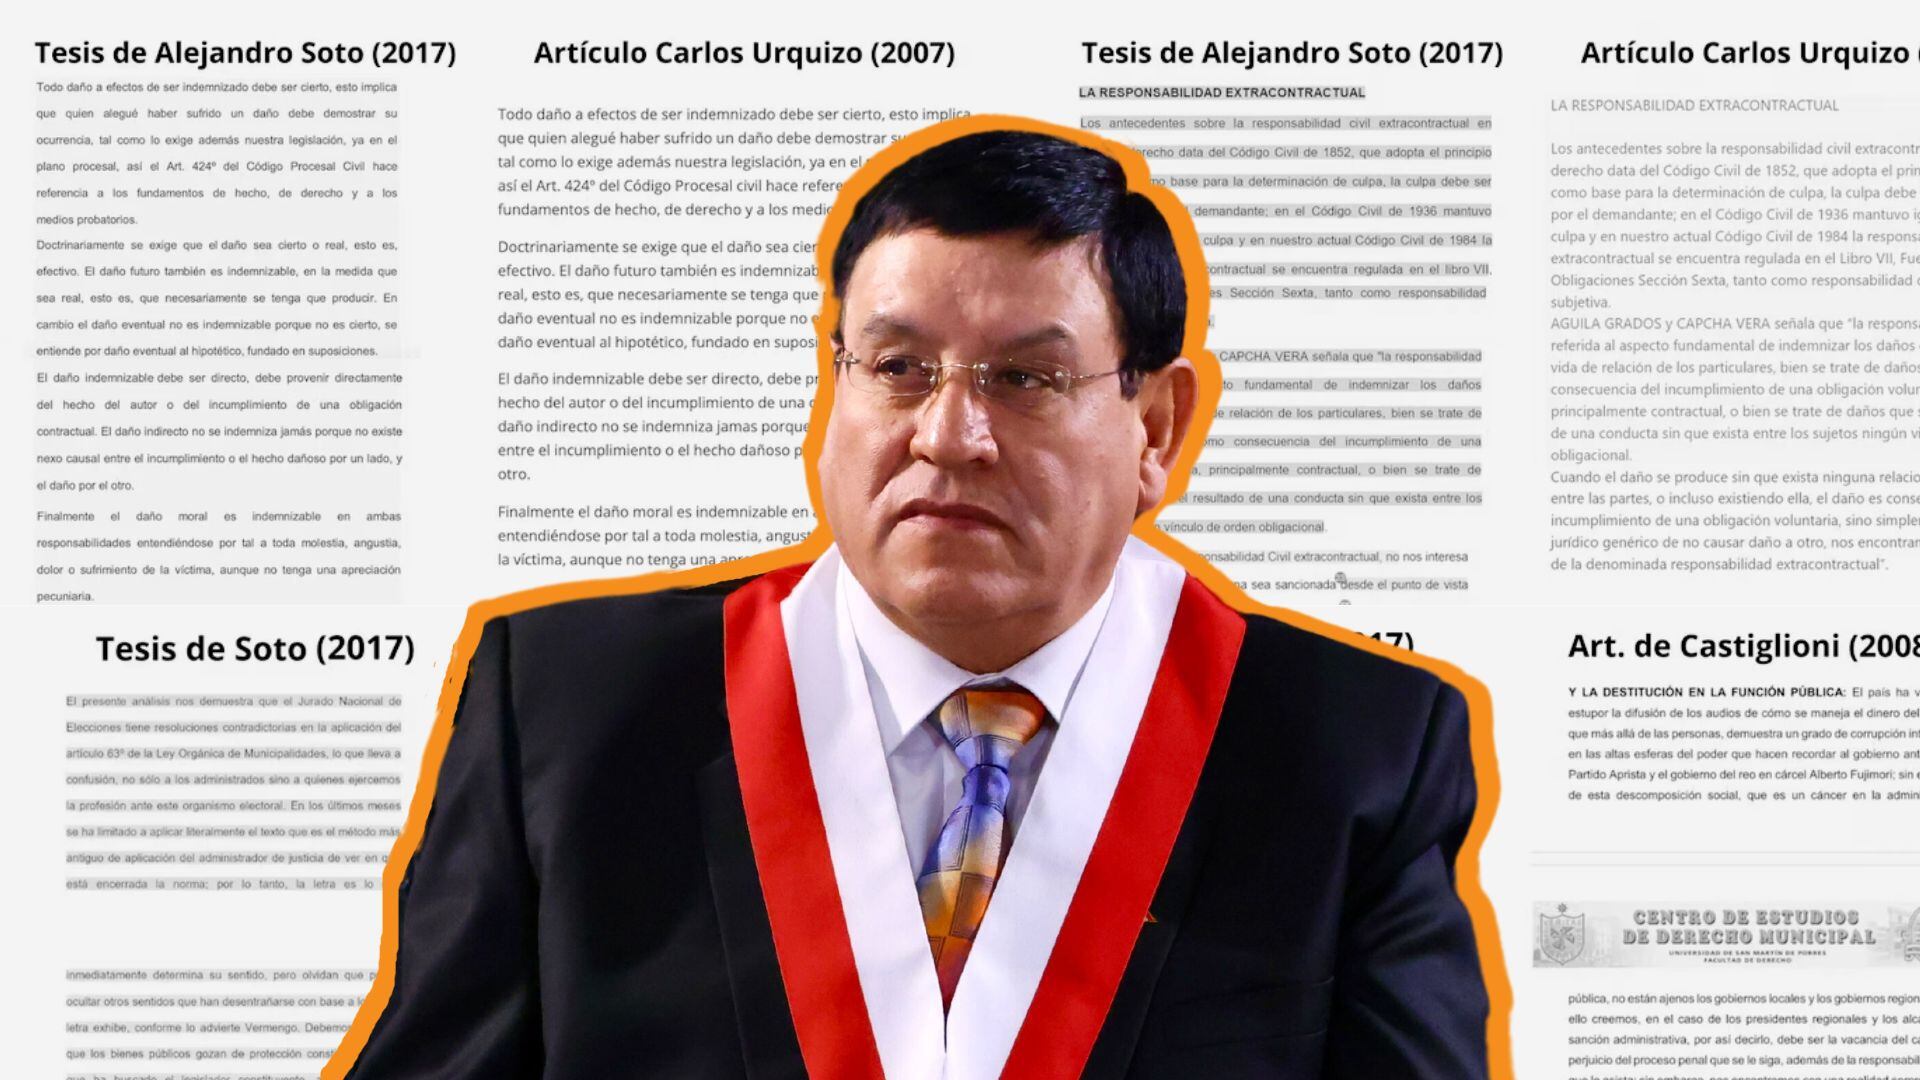 Titular del Congreso envuelto en otro cuestionamiento sobre su falta de idoneidad. | Infobae Perú / Camila Calderón